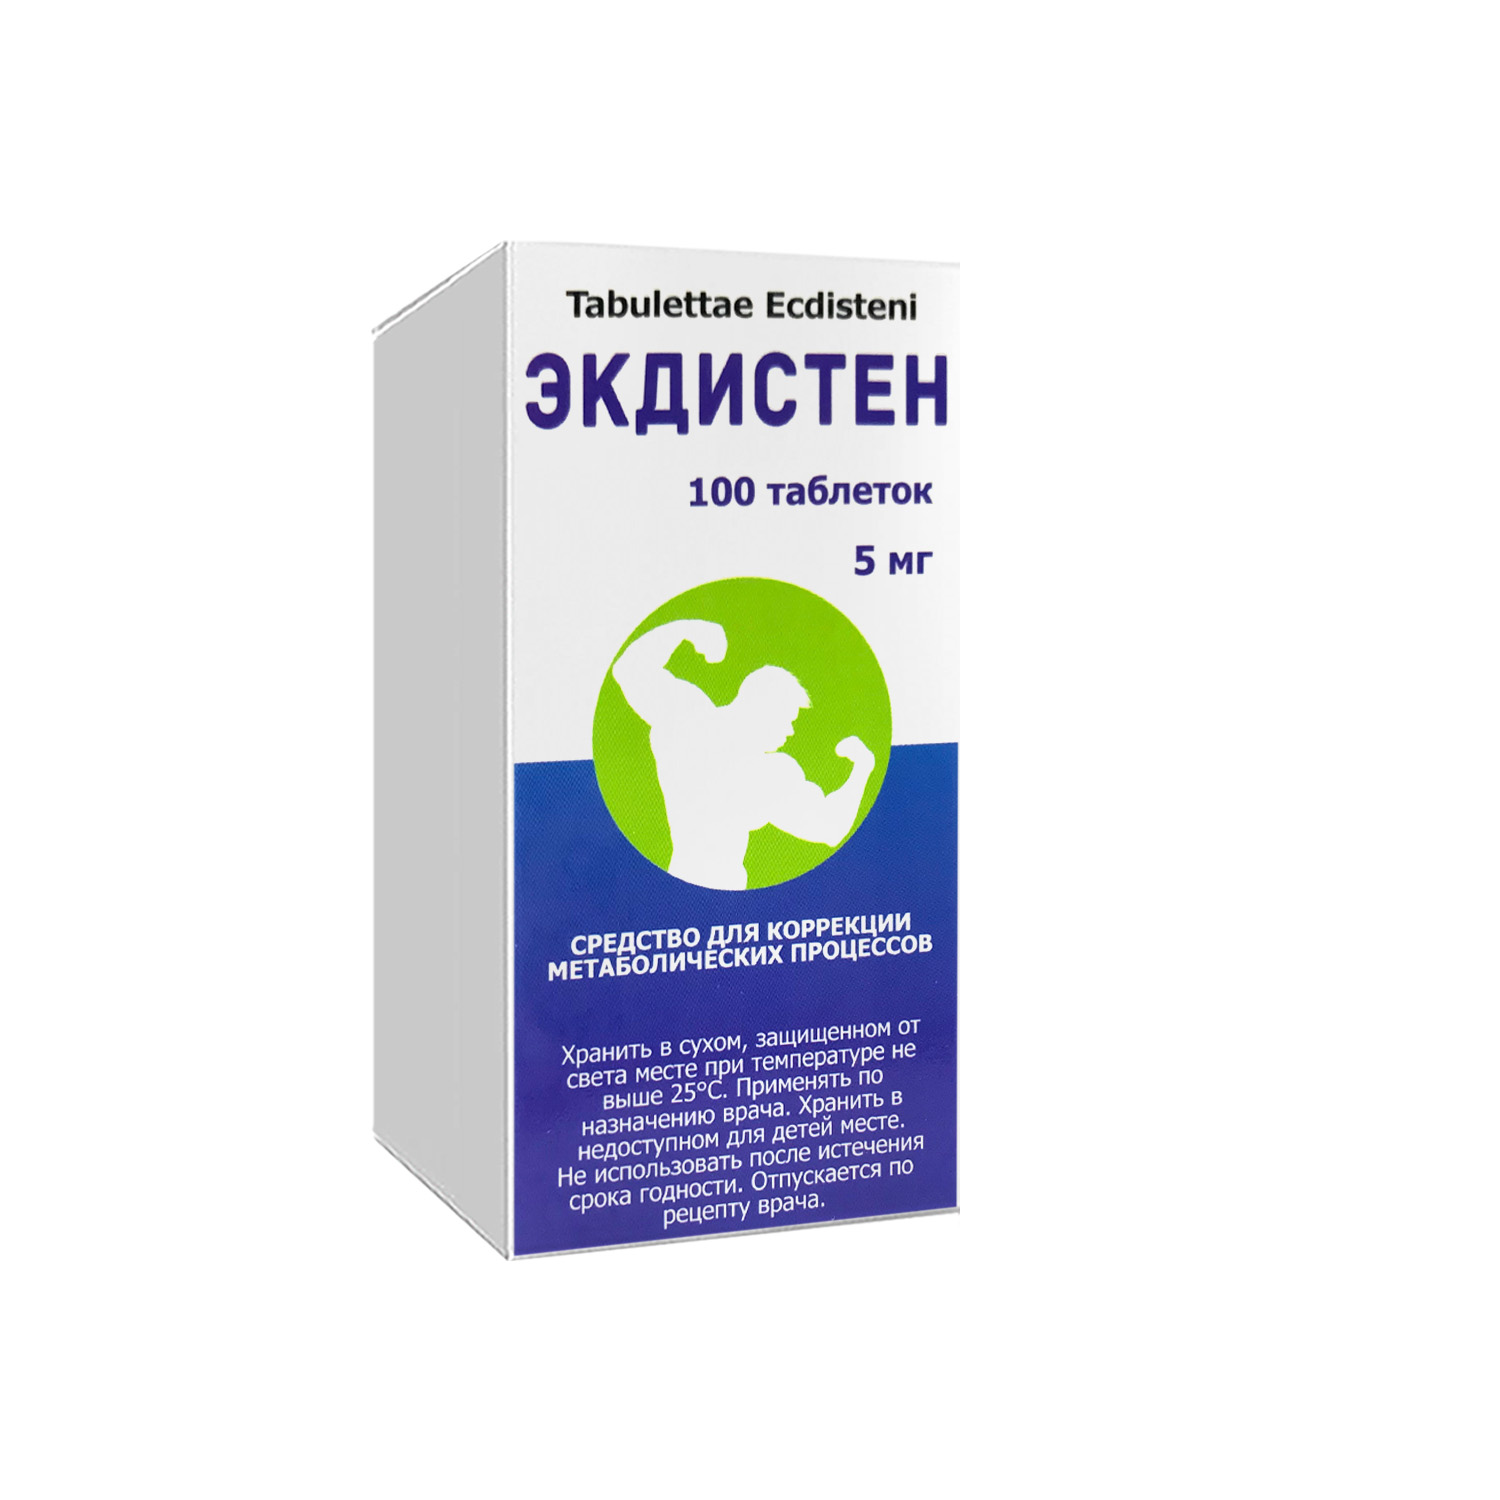 Экдистен таблетки 5мг №100 -  в Ташкенте онлайн по хорошей цене .